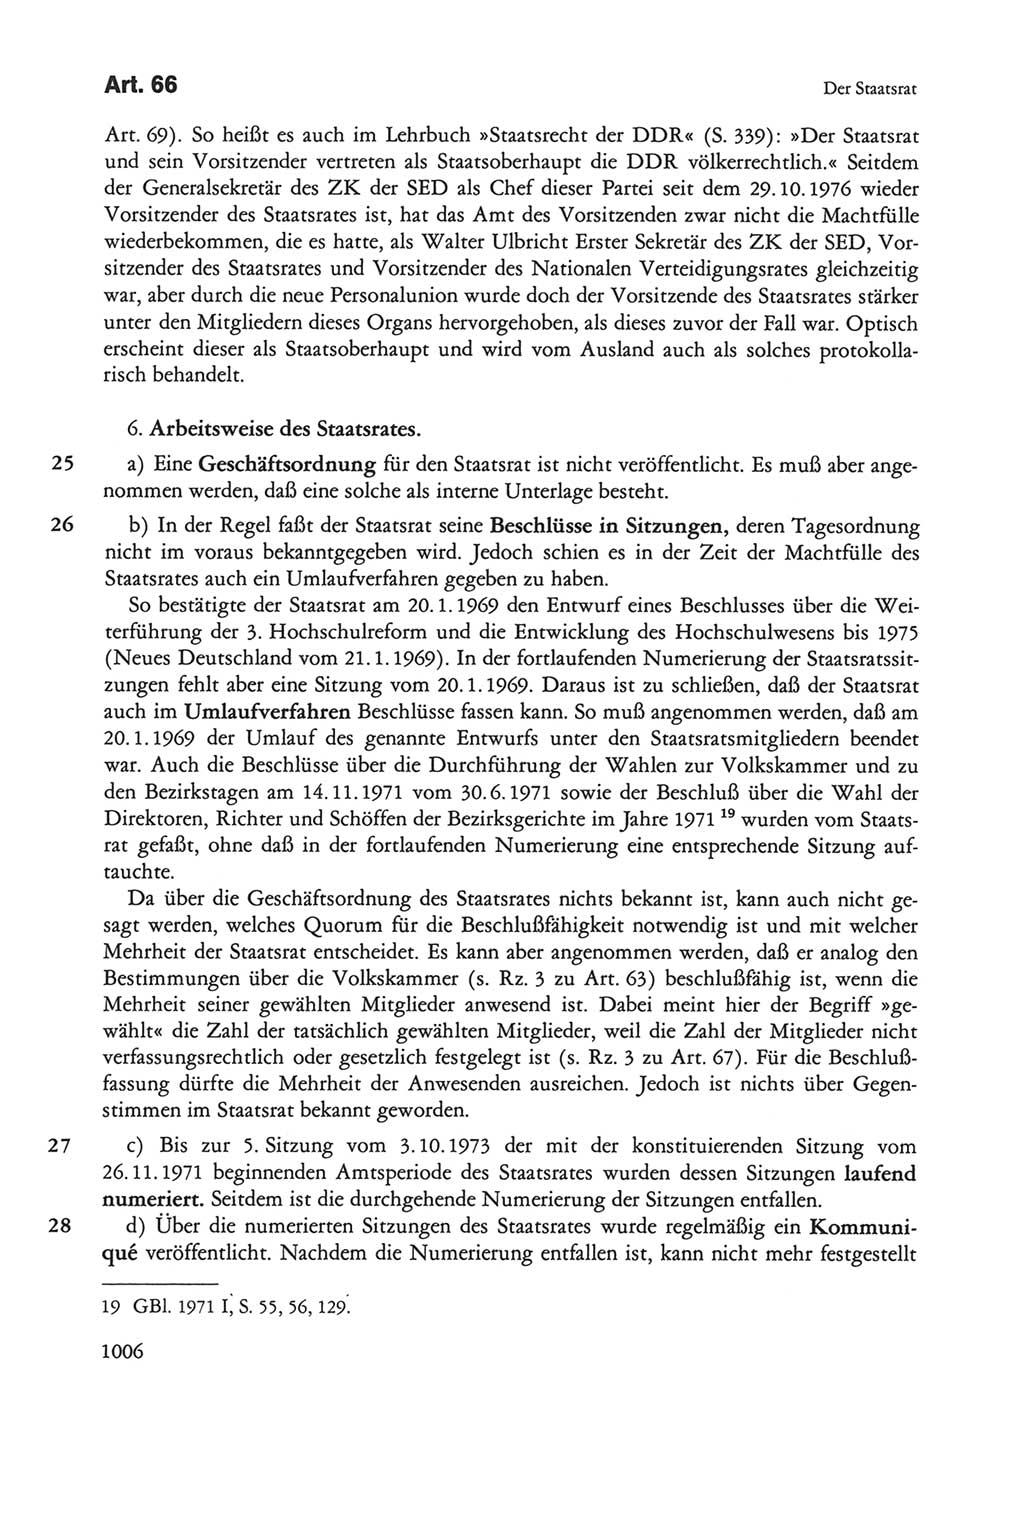 Die sozialistische Verfassung der Deutschen Demokratischen Republik (DDR), Kommentar 1982, Seite 1006 (Soz. Verf. DDR Komm. 1982, S. 1006)